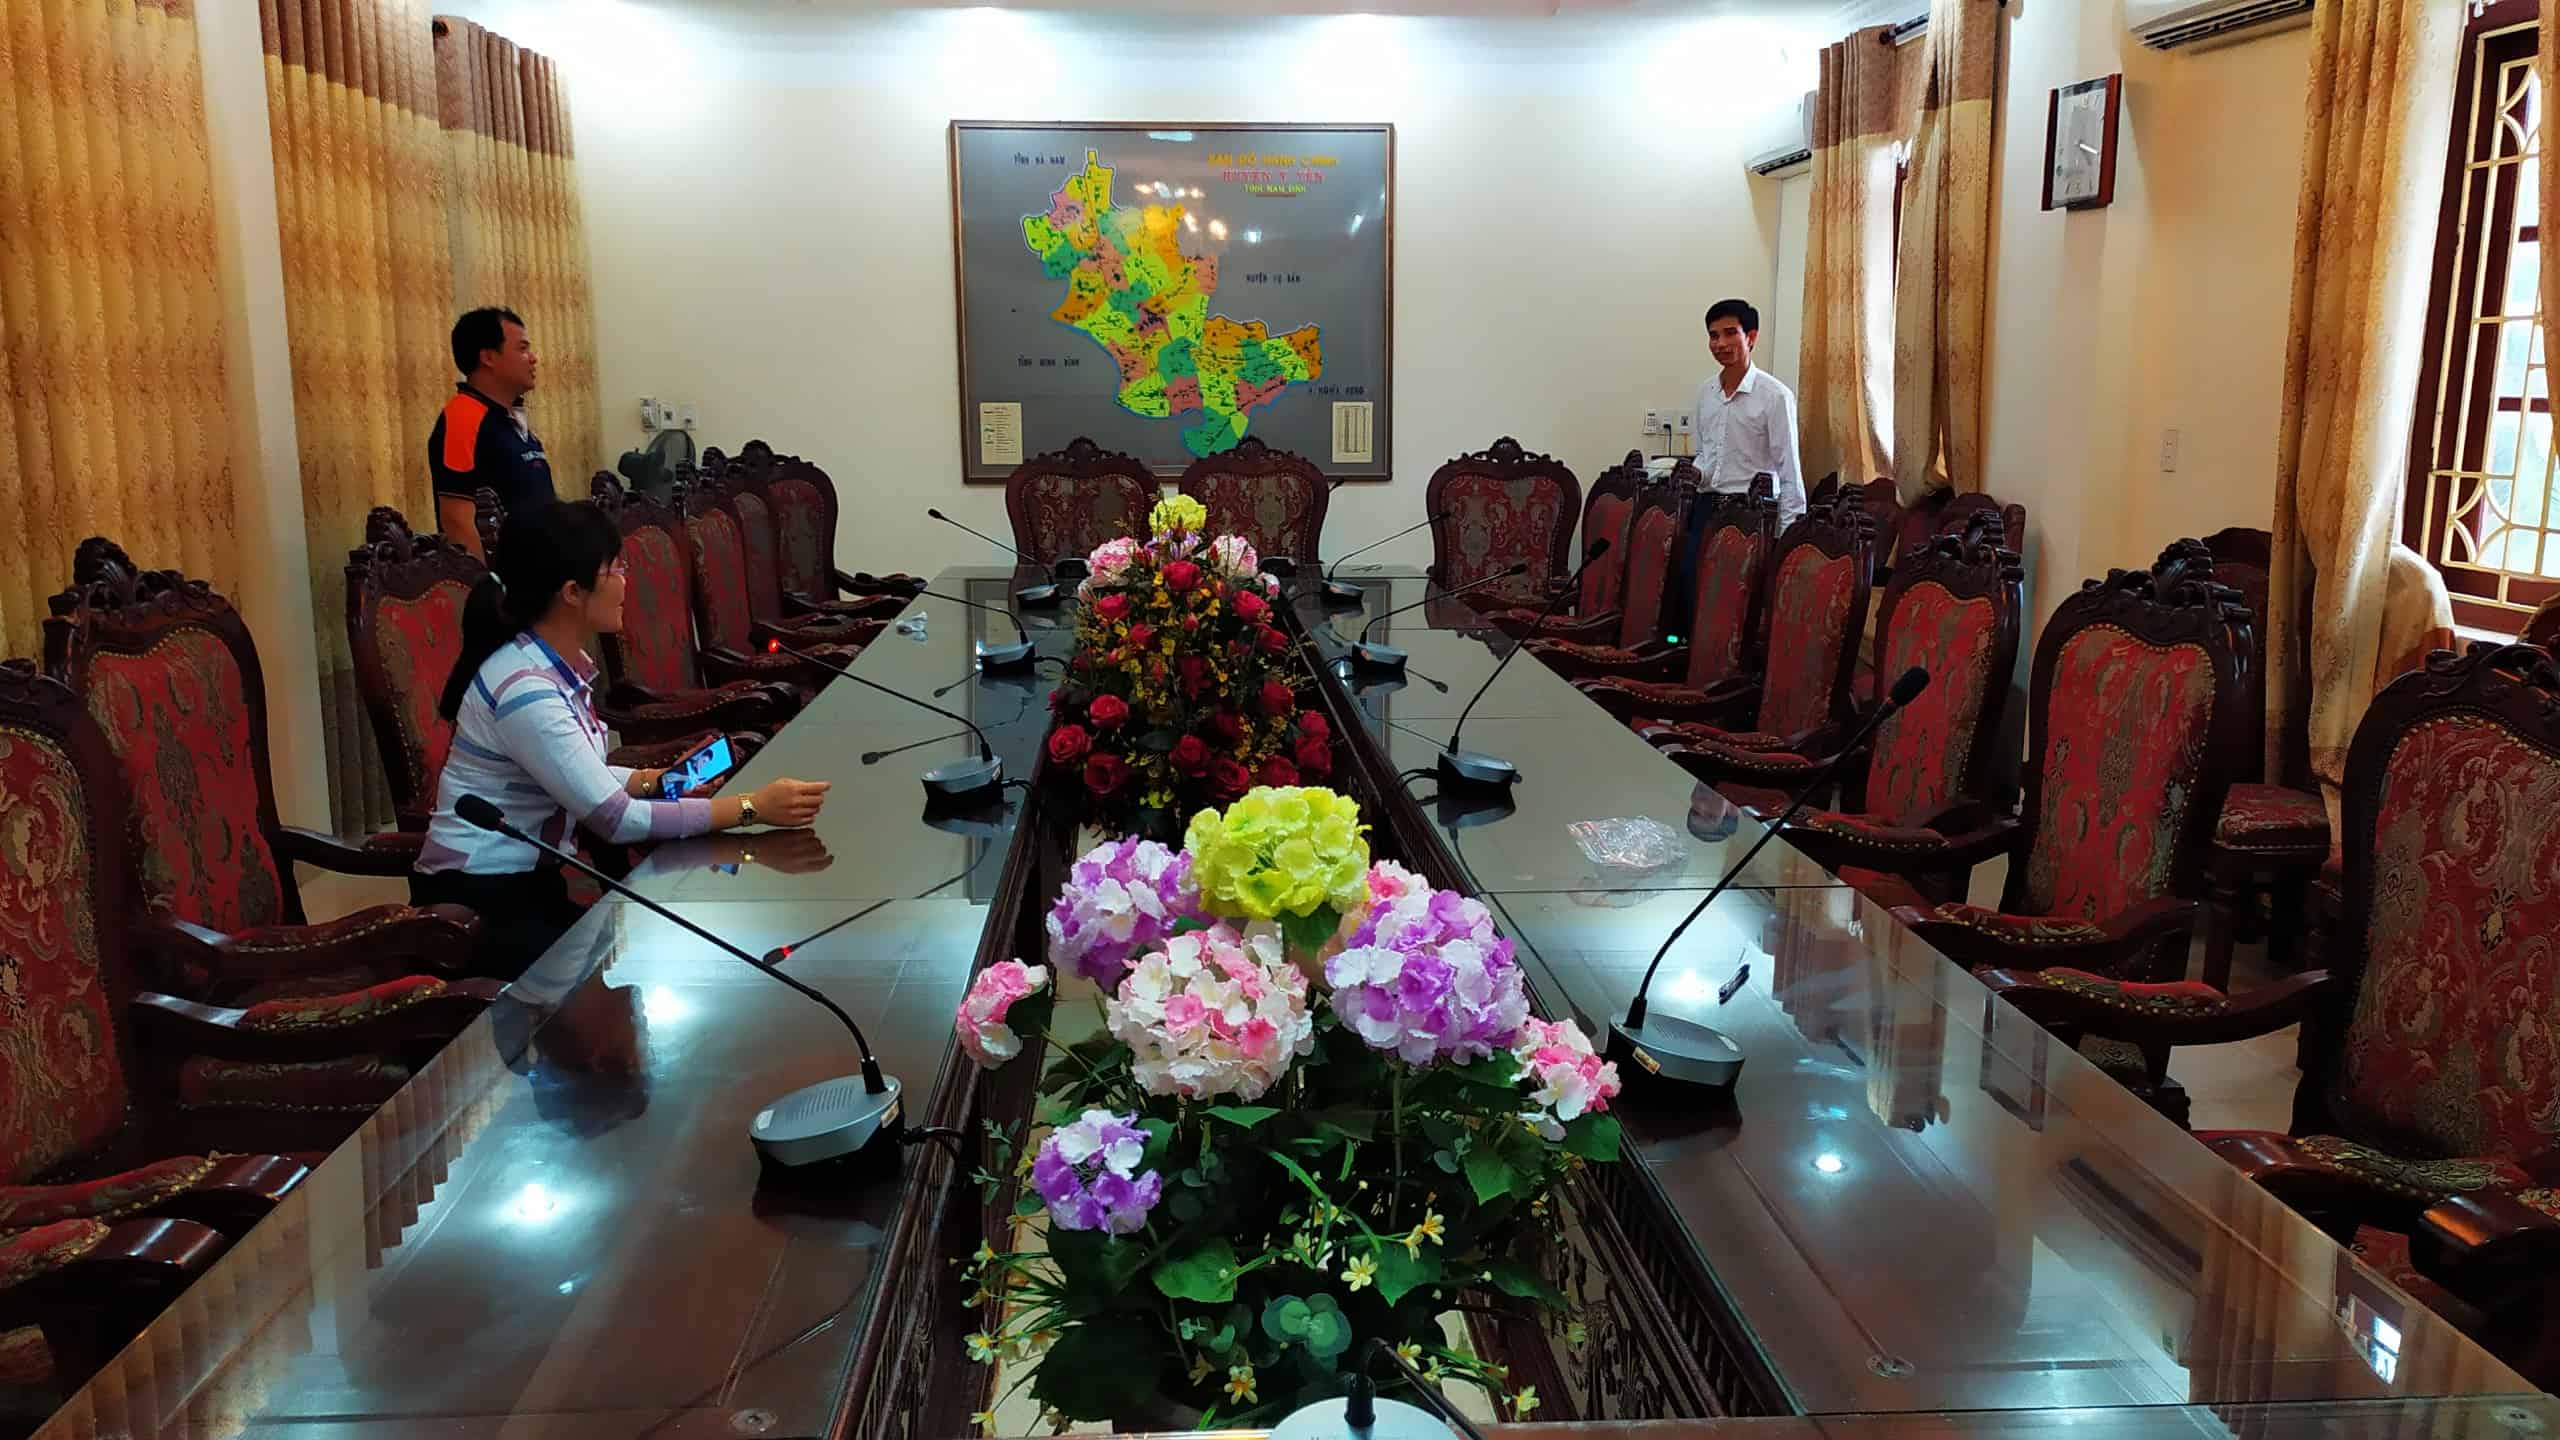 Hệ thống hội thảo TOA TS-780 âm thanh phòng họp trực tuyến: Huyện Ý Yên, Nam Định